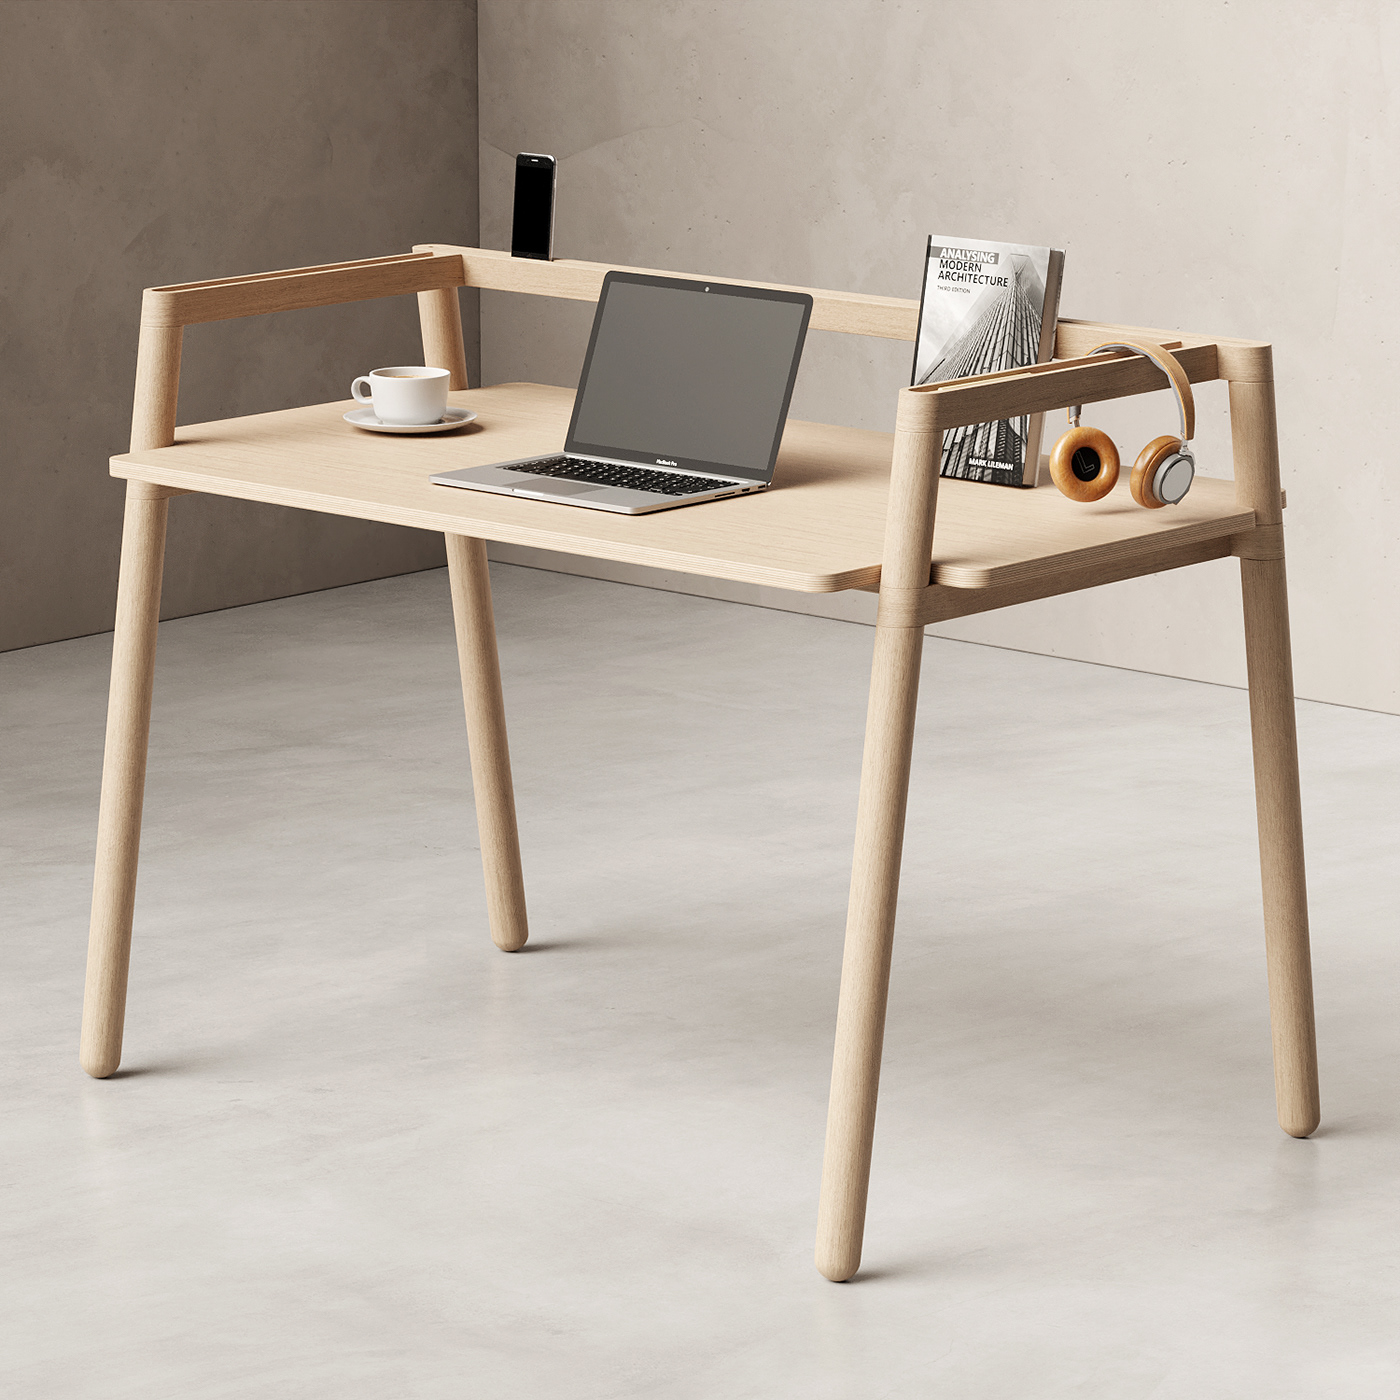 3D concept design desk furniture industrial design  product design  wood desk wood furniture wood joint